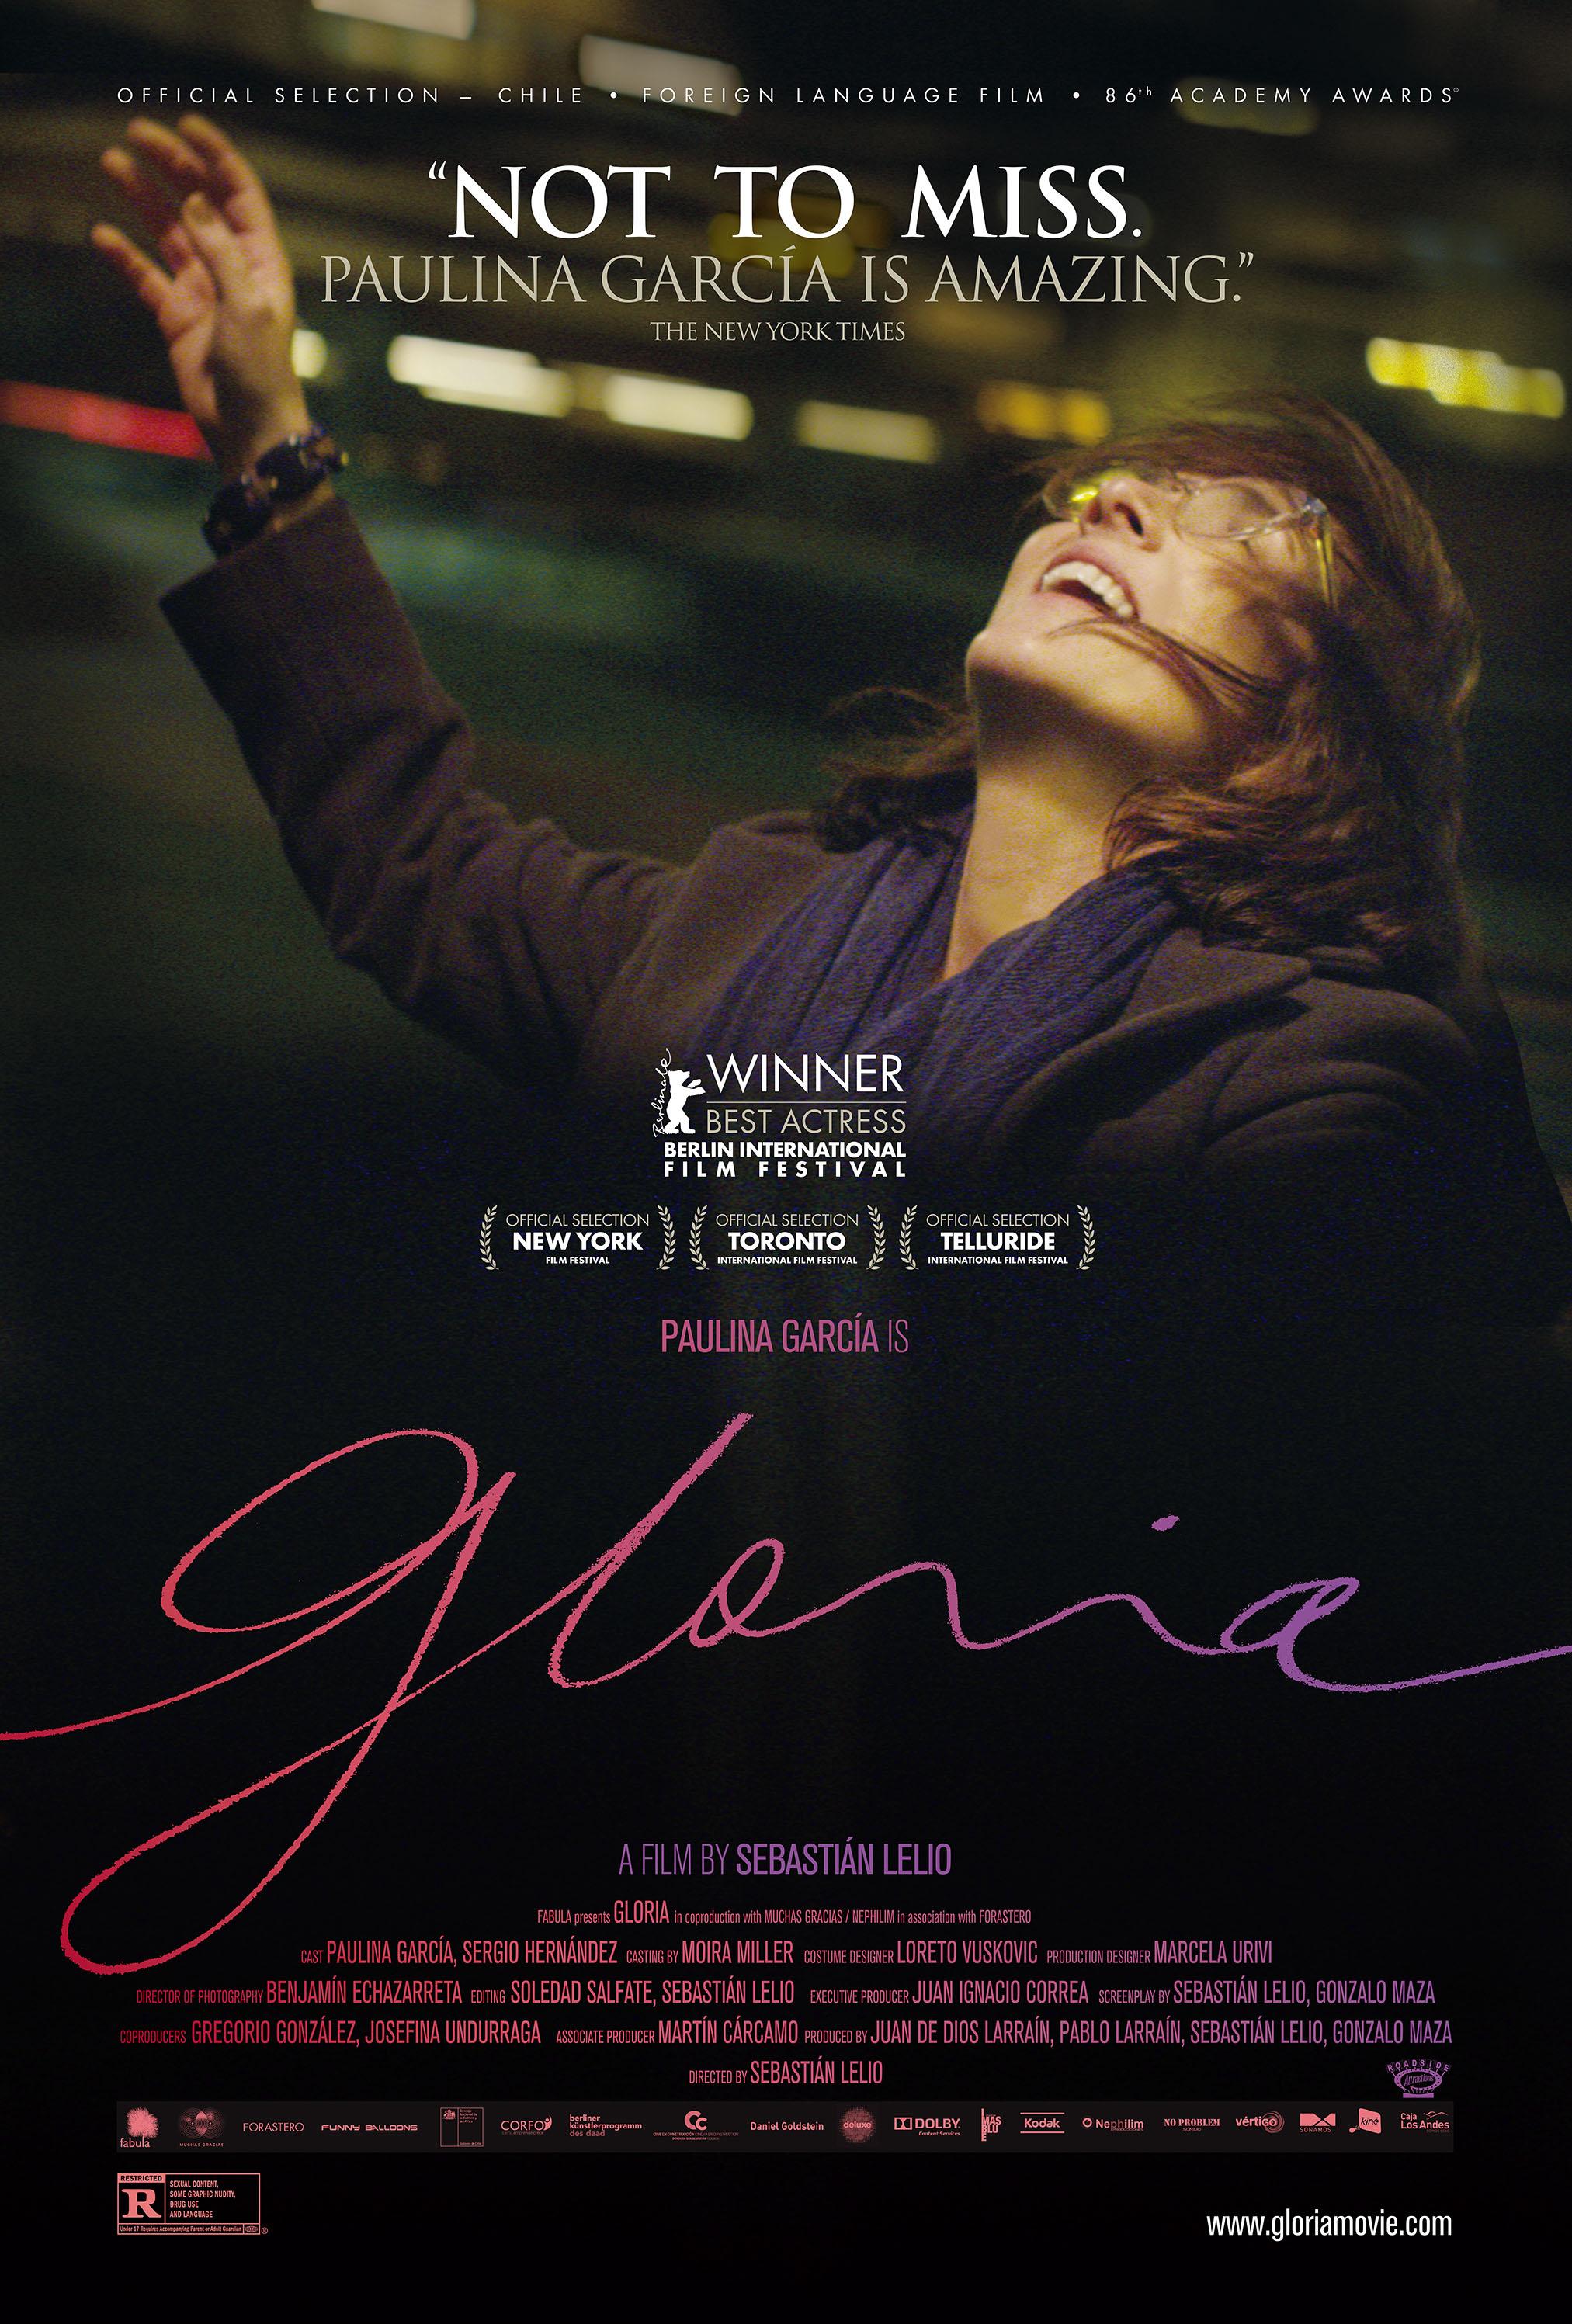 Постер фильма Глория | Gloria